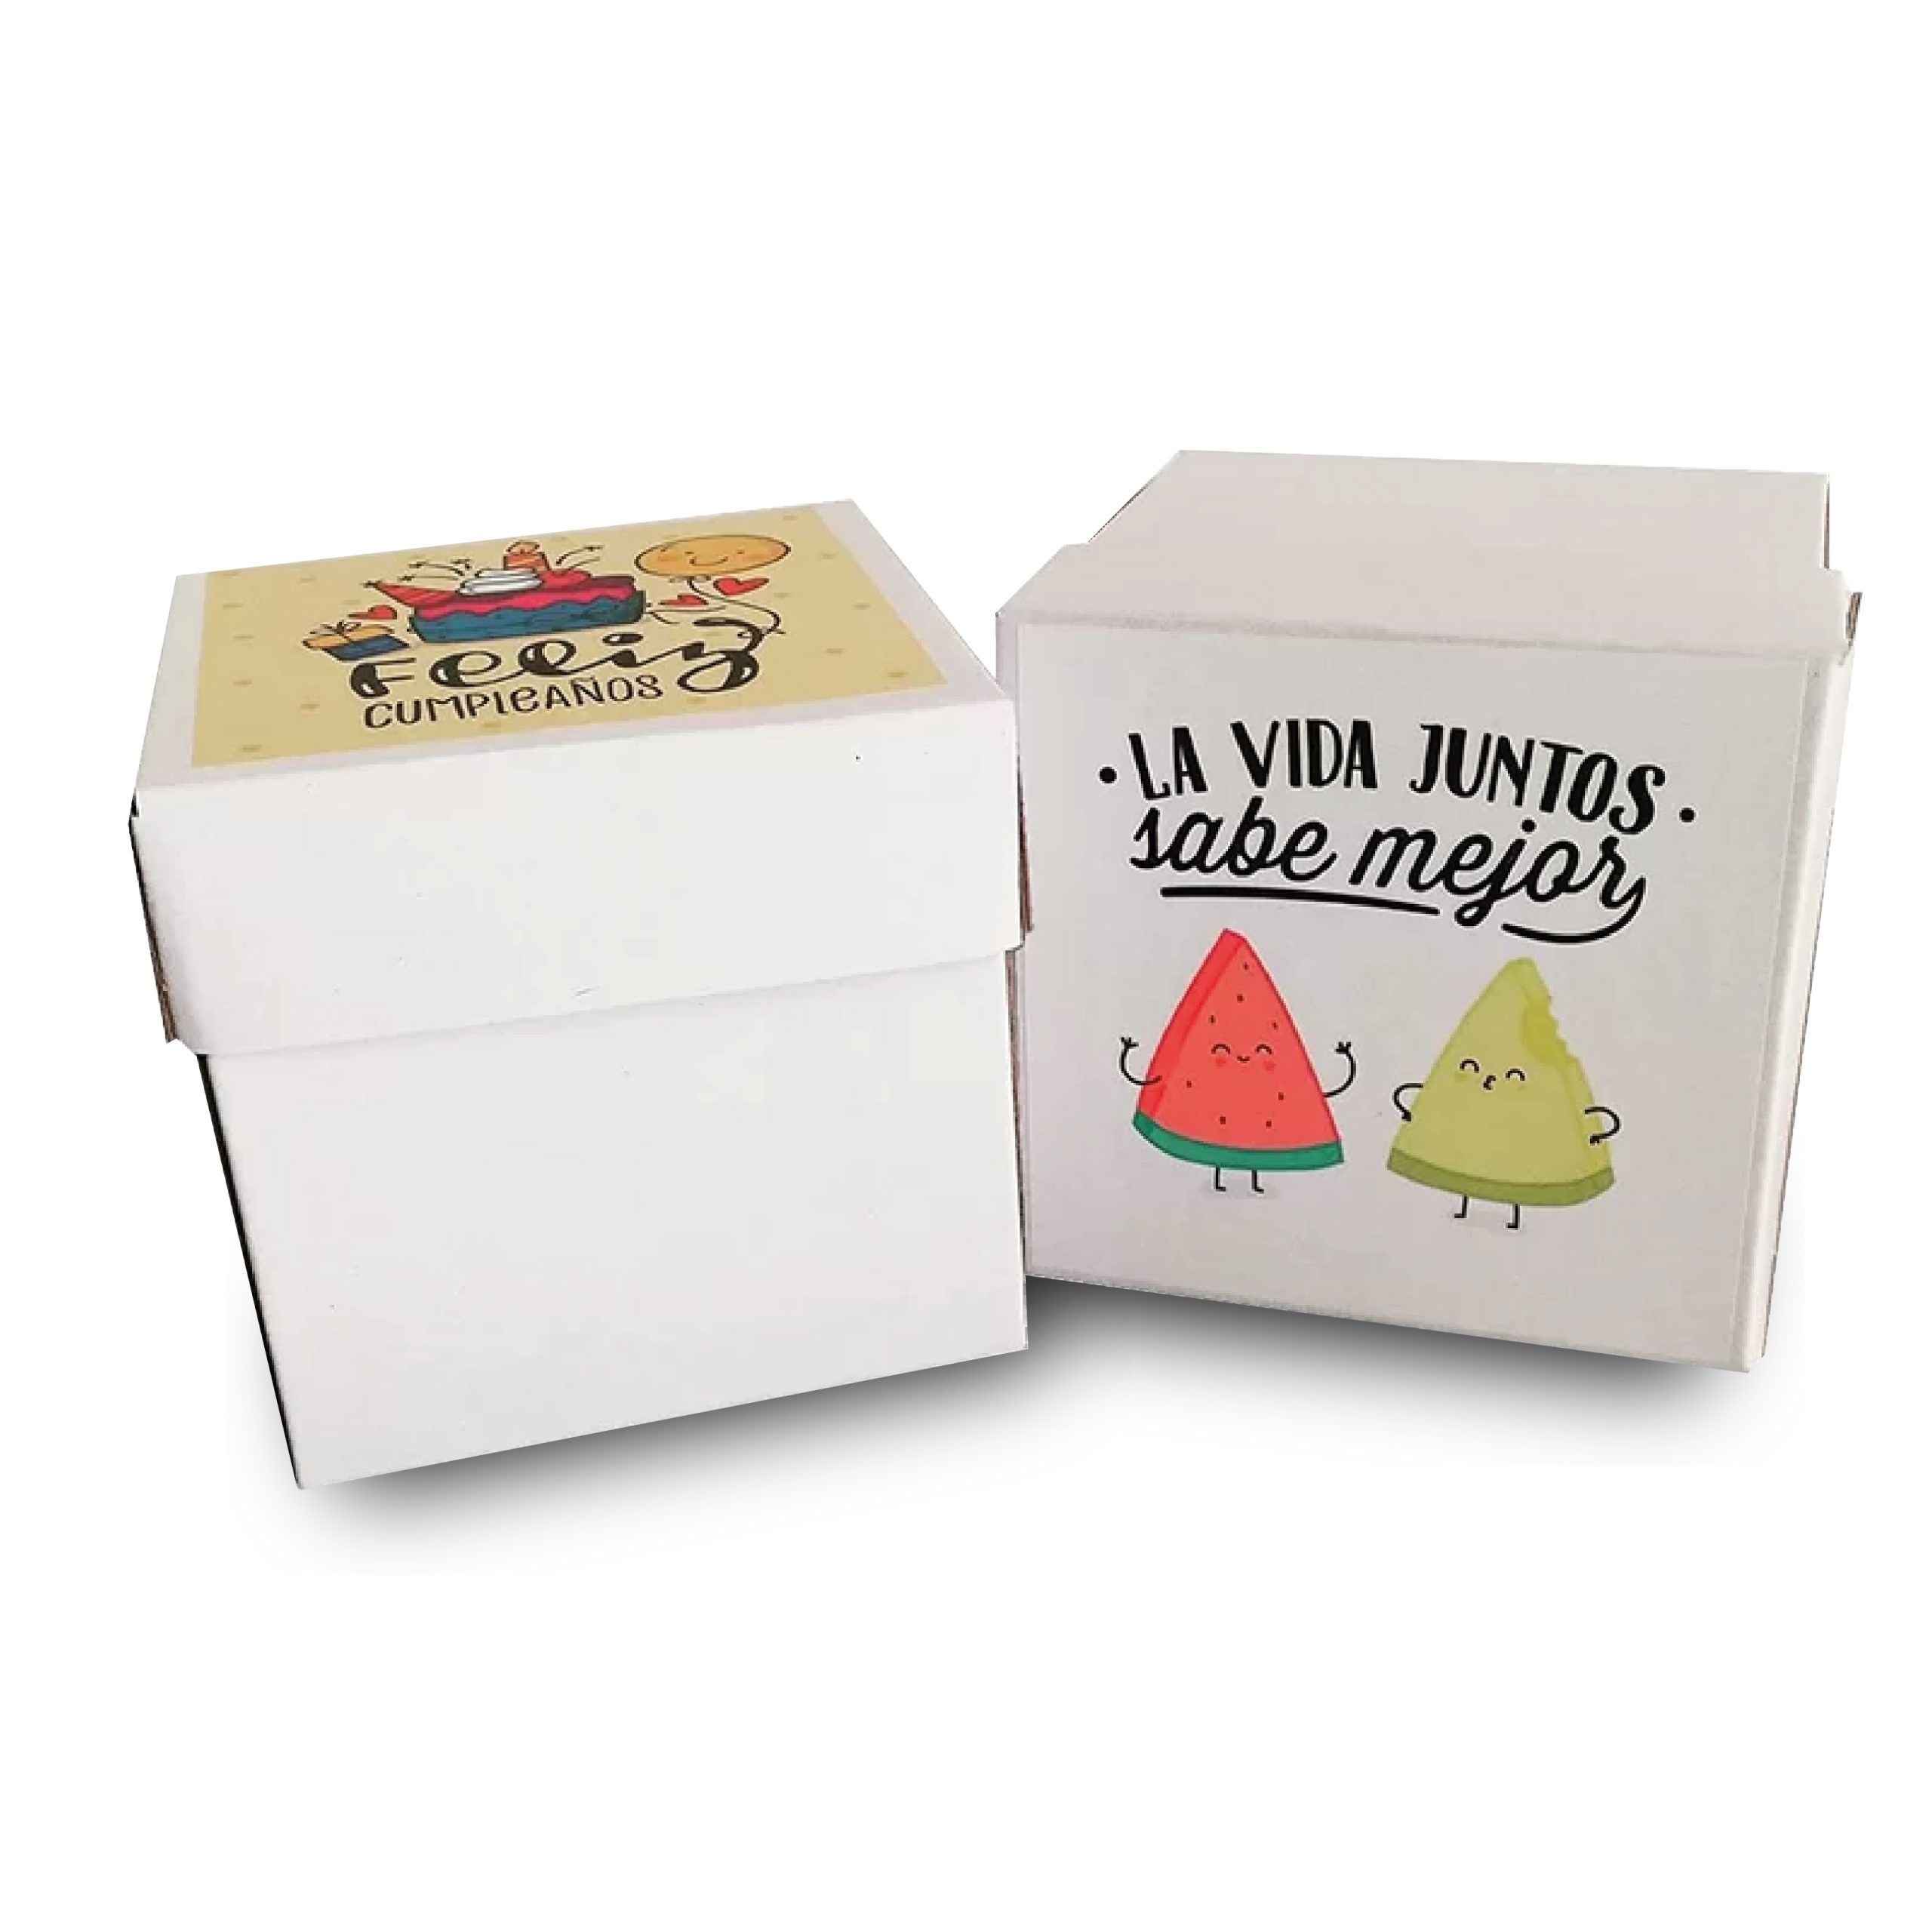 Cajas y empaques personalizados para eventos de negocio o familiares